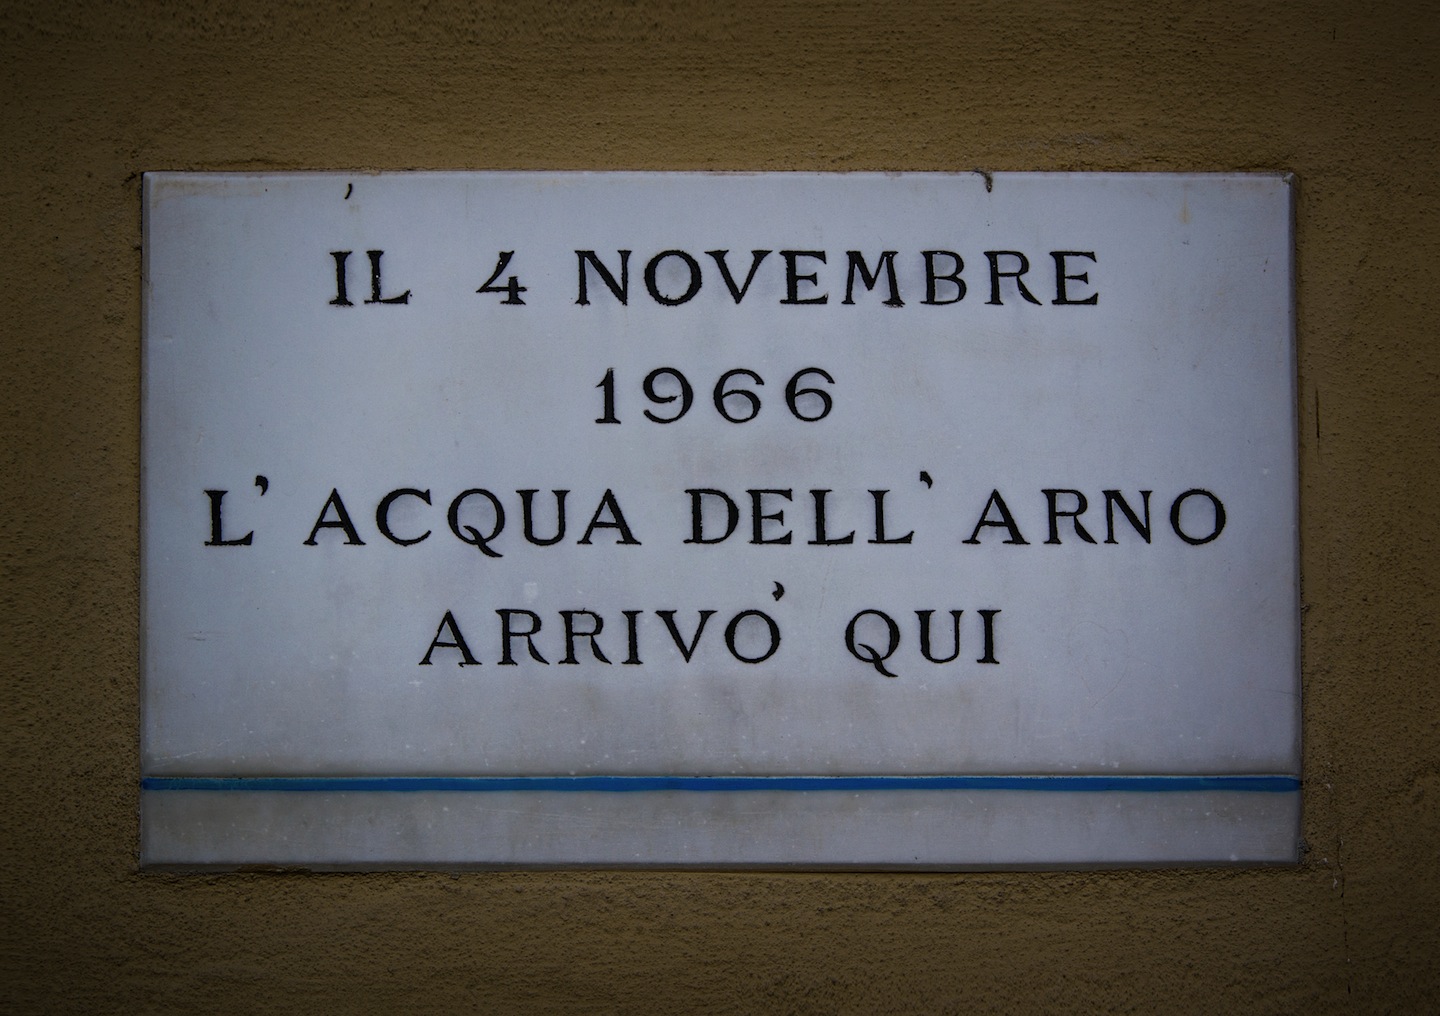 4 novembre 1966: alluvione di Firenze e del Bacino dell'Arno. Cronaca di uno dei più grandi eventi che ha segnato la storia della Toscana e del nostro paese